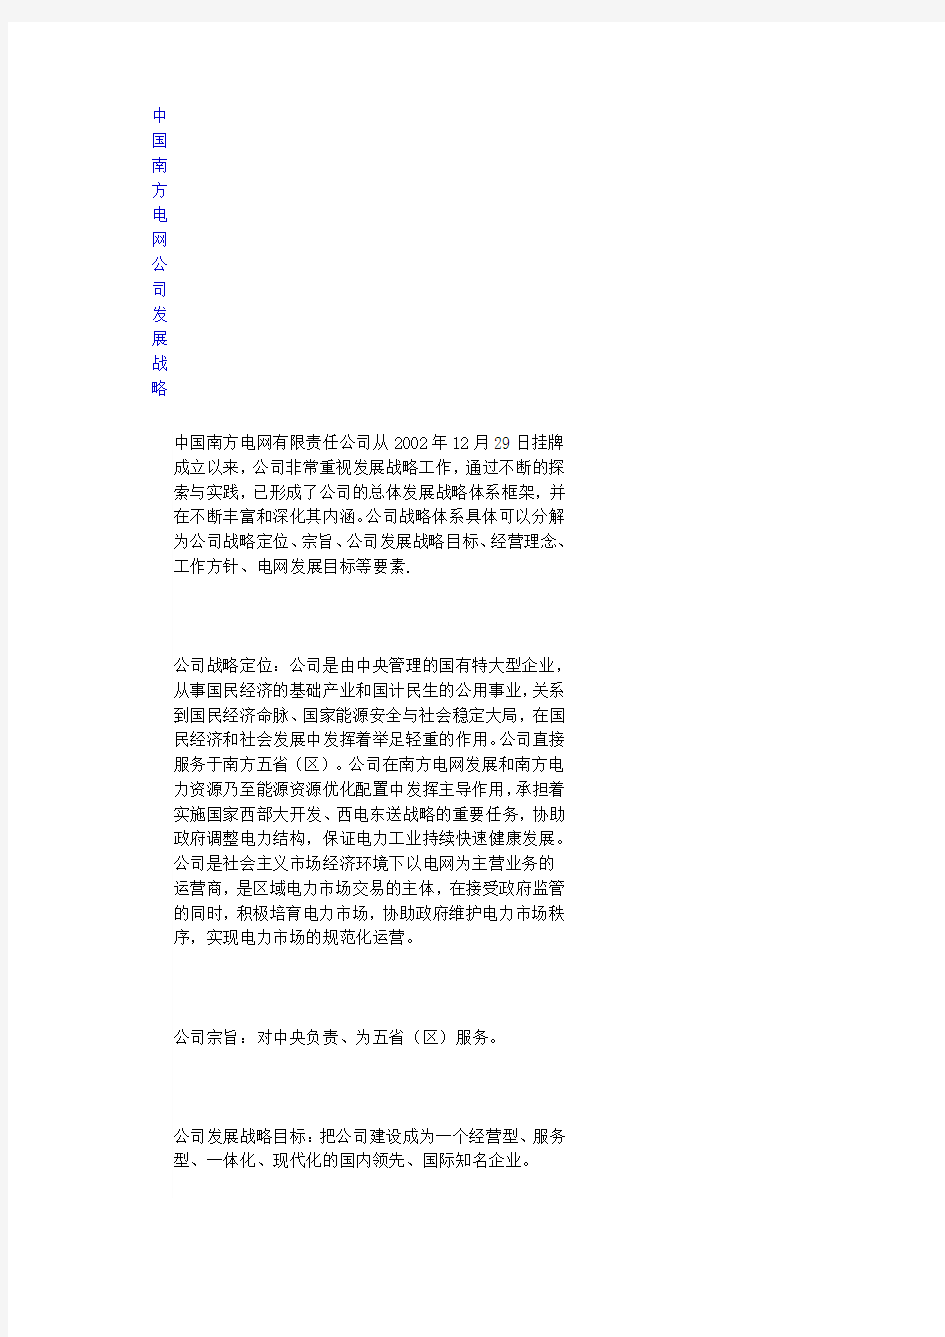 中国南方电网公司发展战略